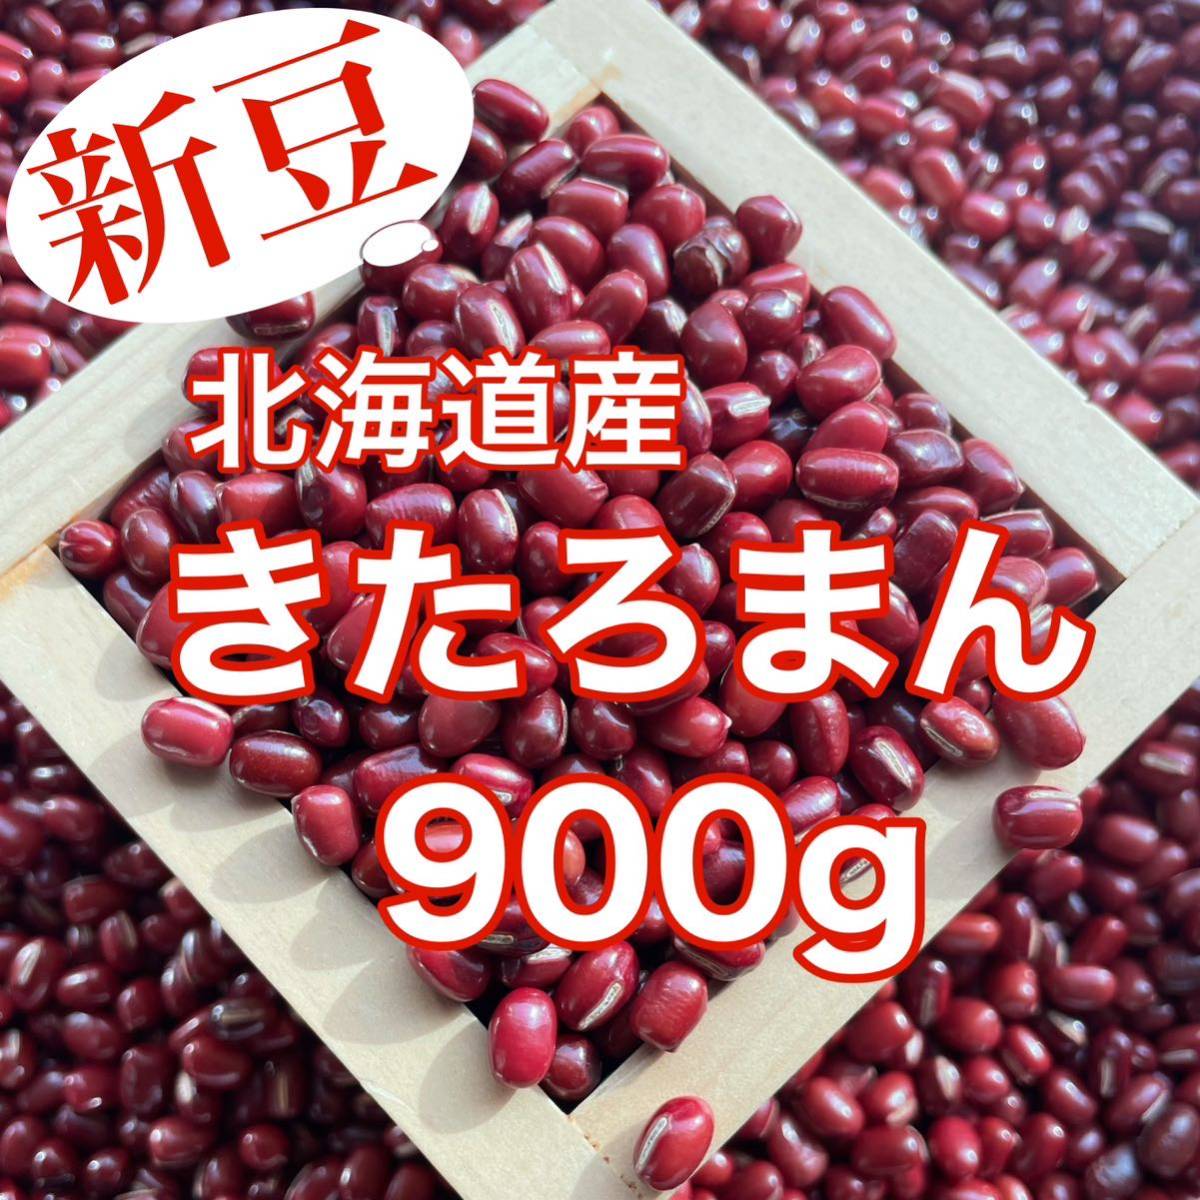 【新豆】北海道産小豆 きたろまん900g_画像1